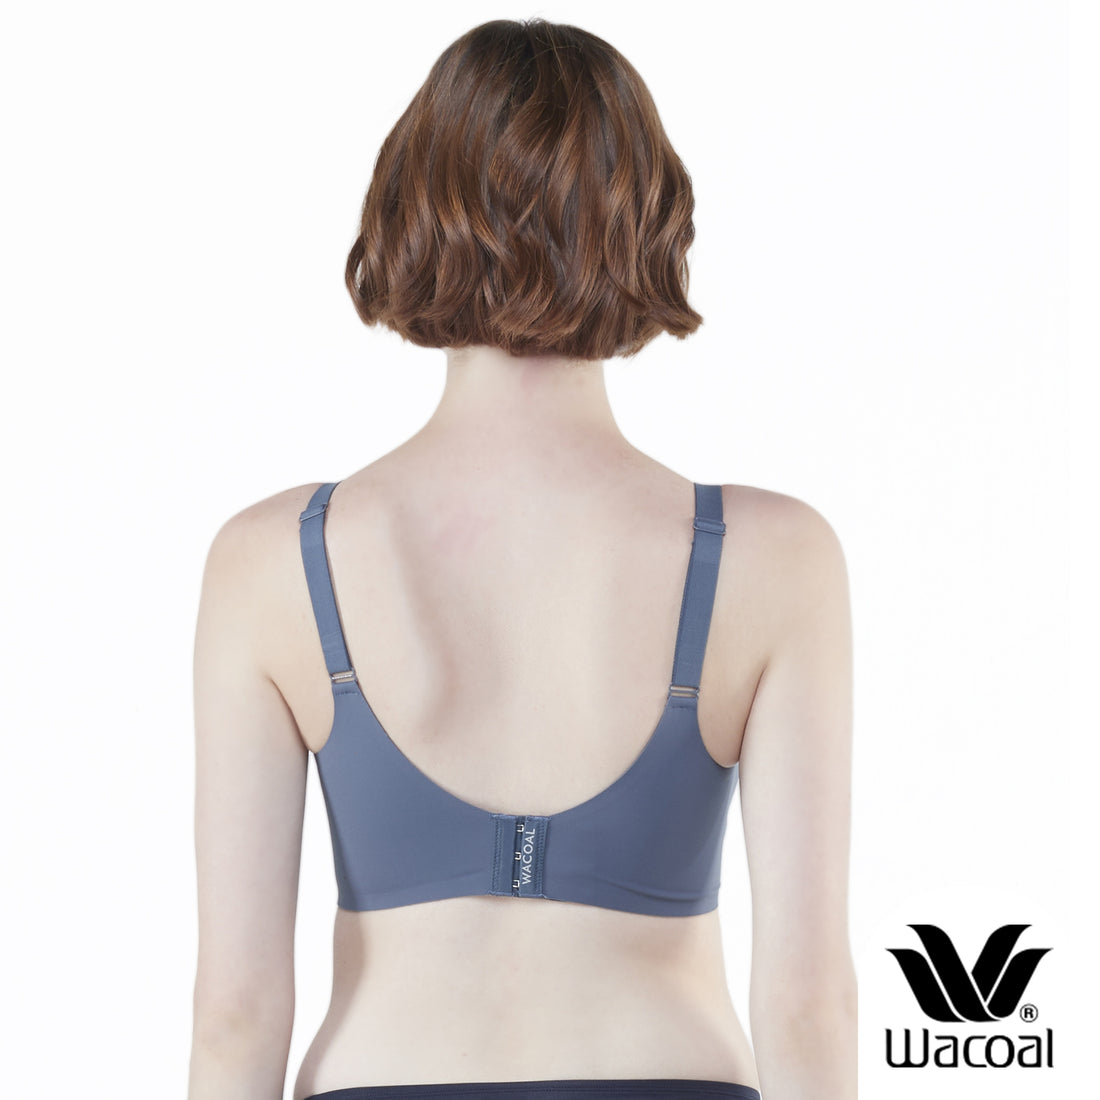 Wacoal Smart Size Go Girls Jelly Bra, Wacoal wireless bra, pack of 2, model WB3Y28/WB3228 Green-Blue (GR-BU)